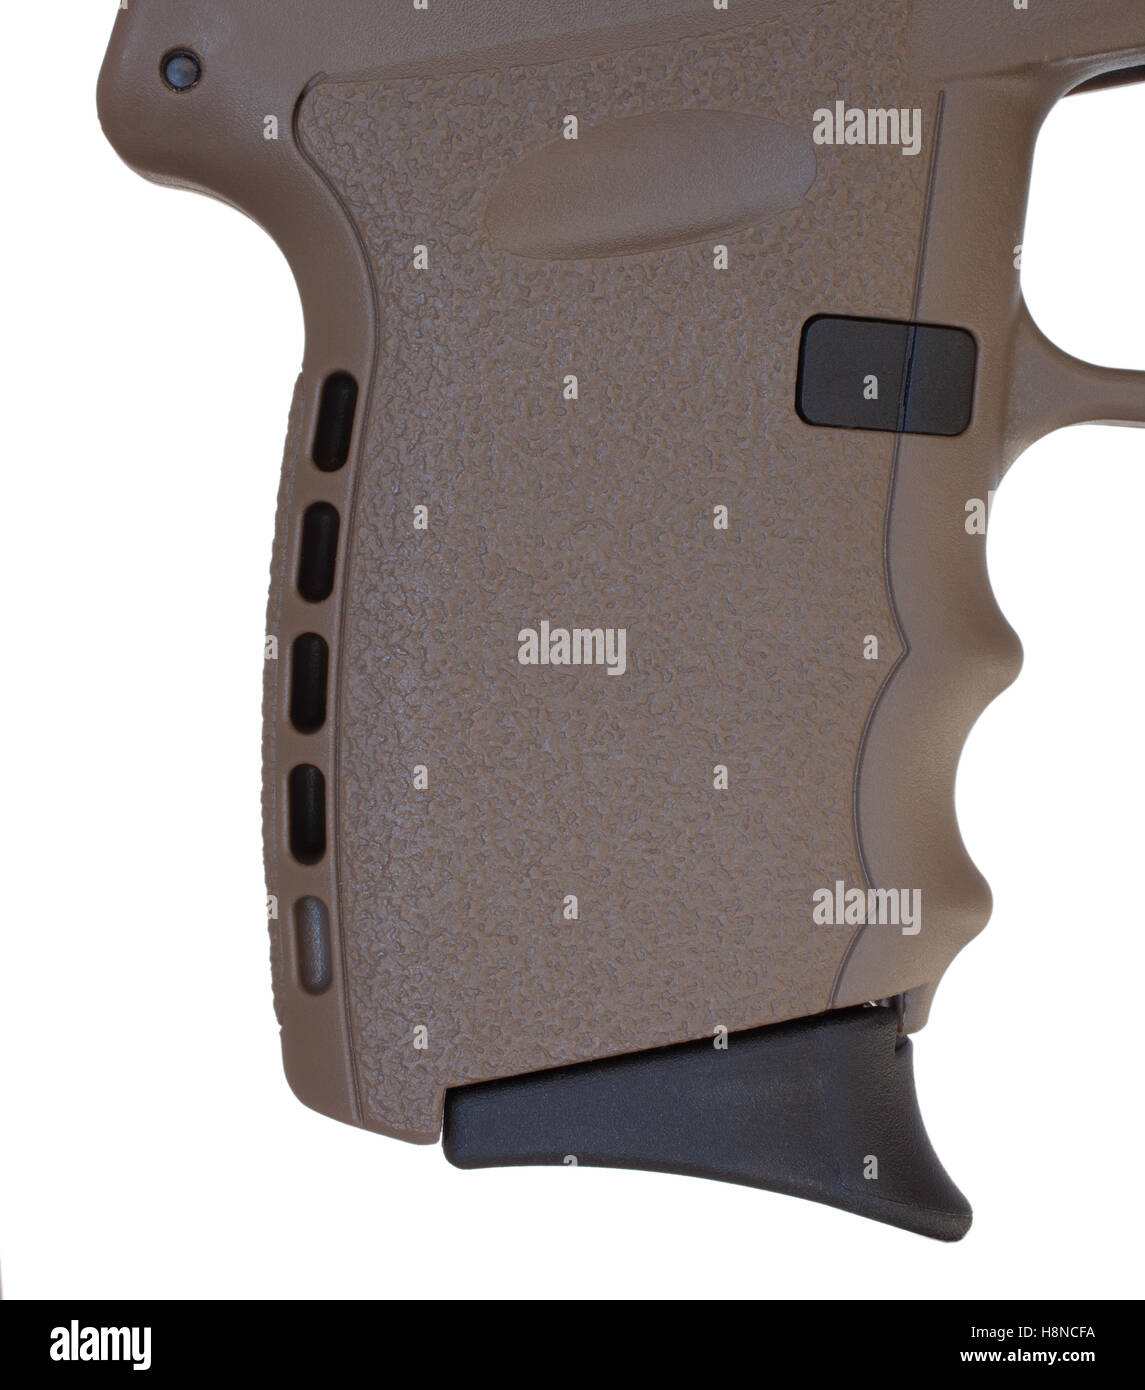 Poignée de pistolet sur un polymère brun handgun isolated on white Banque D'Images